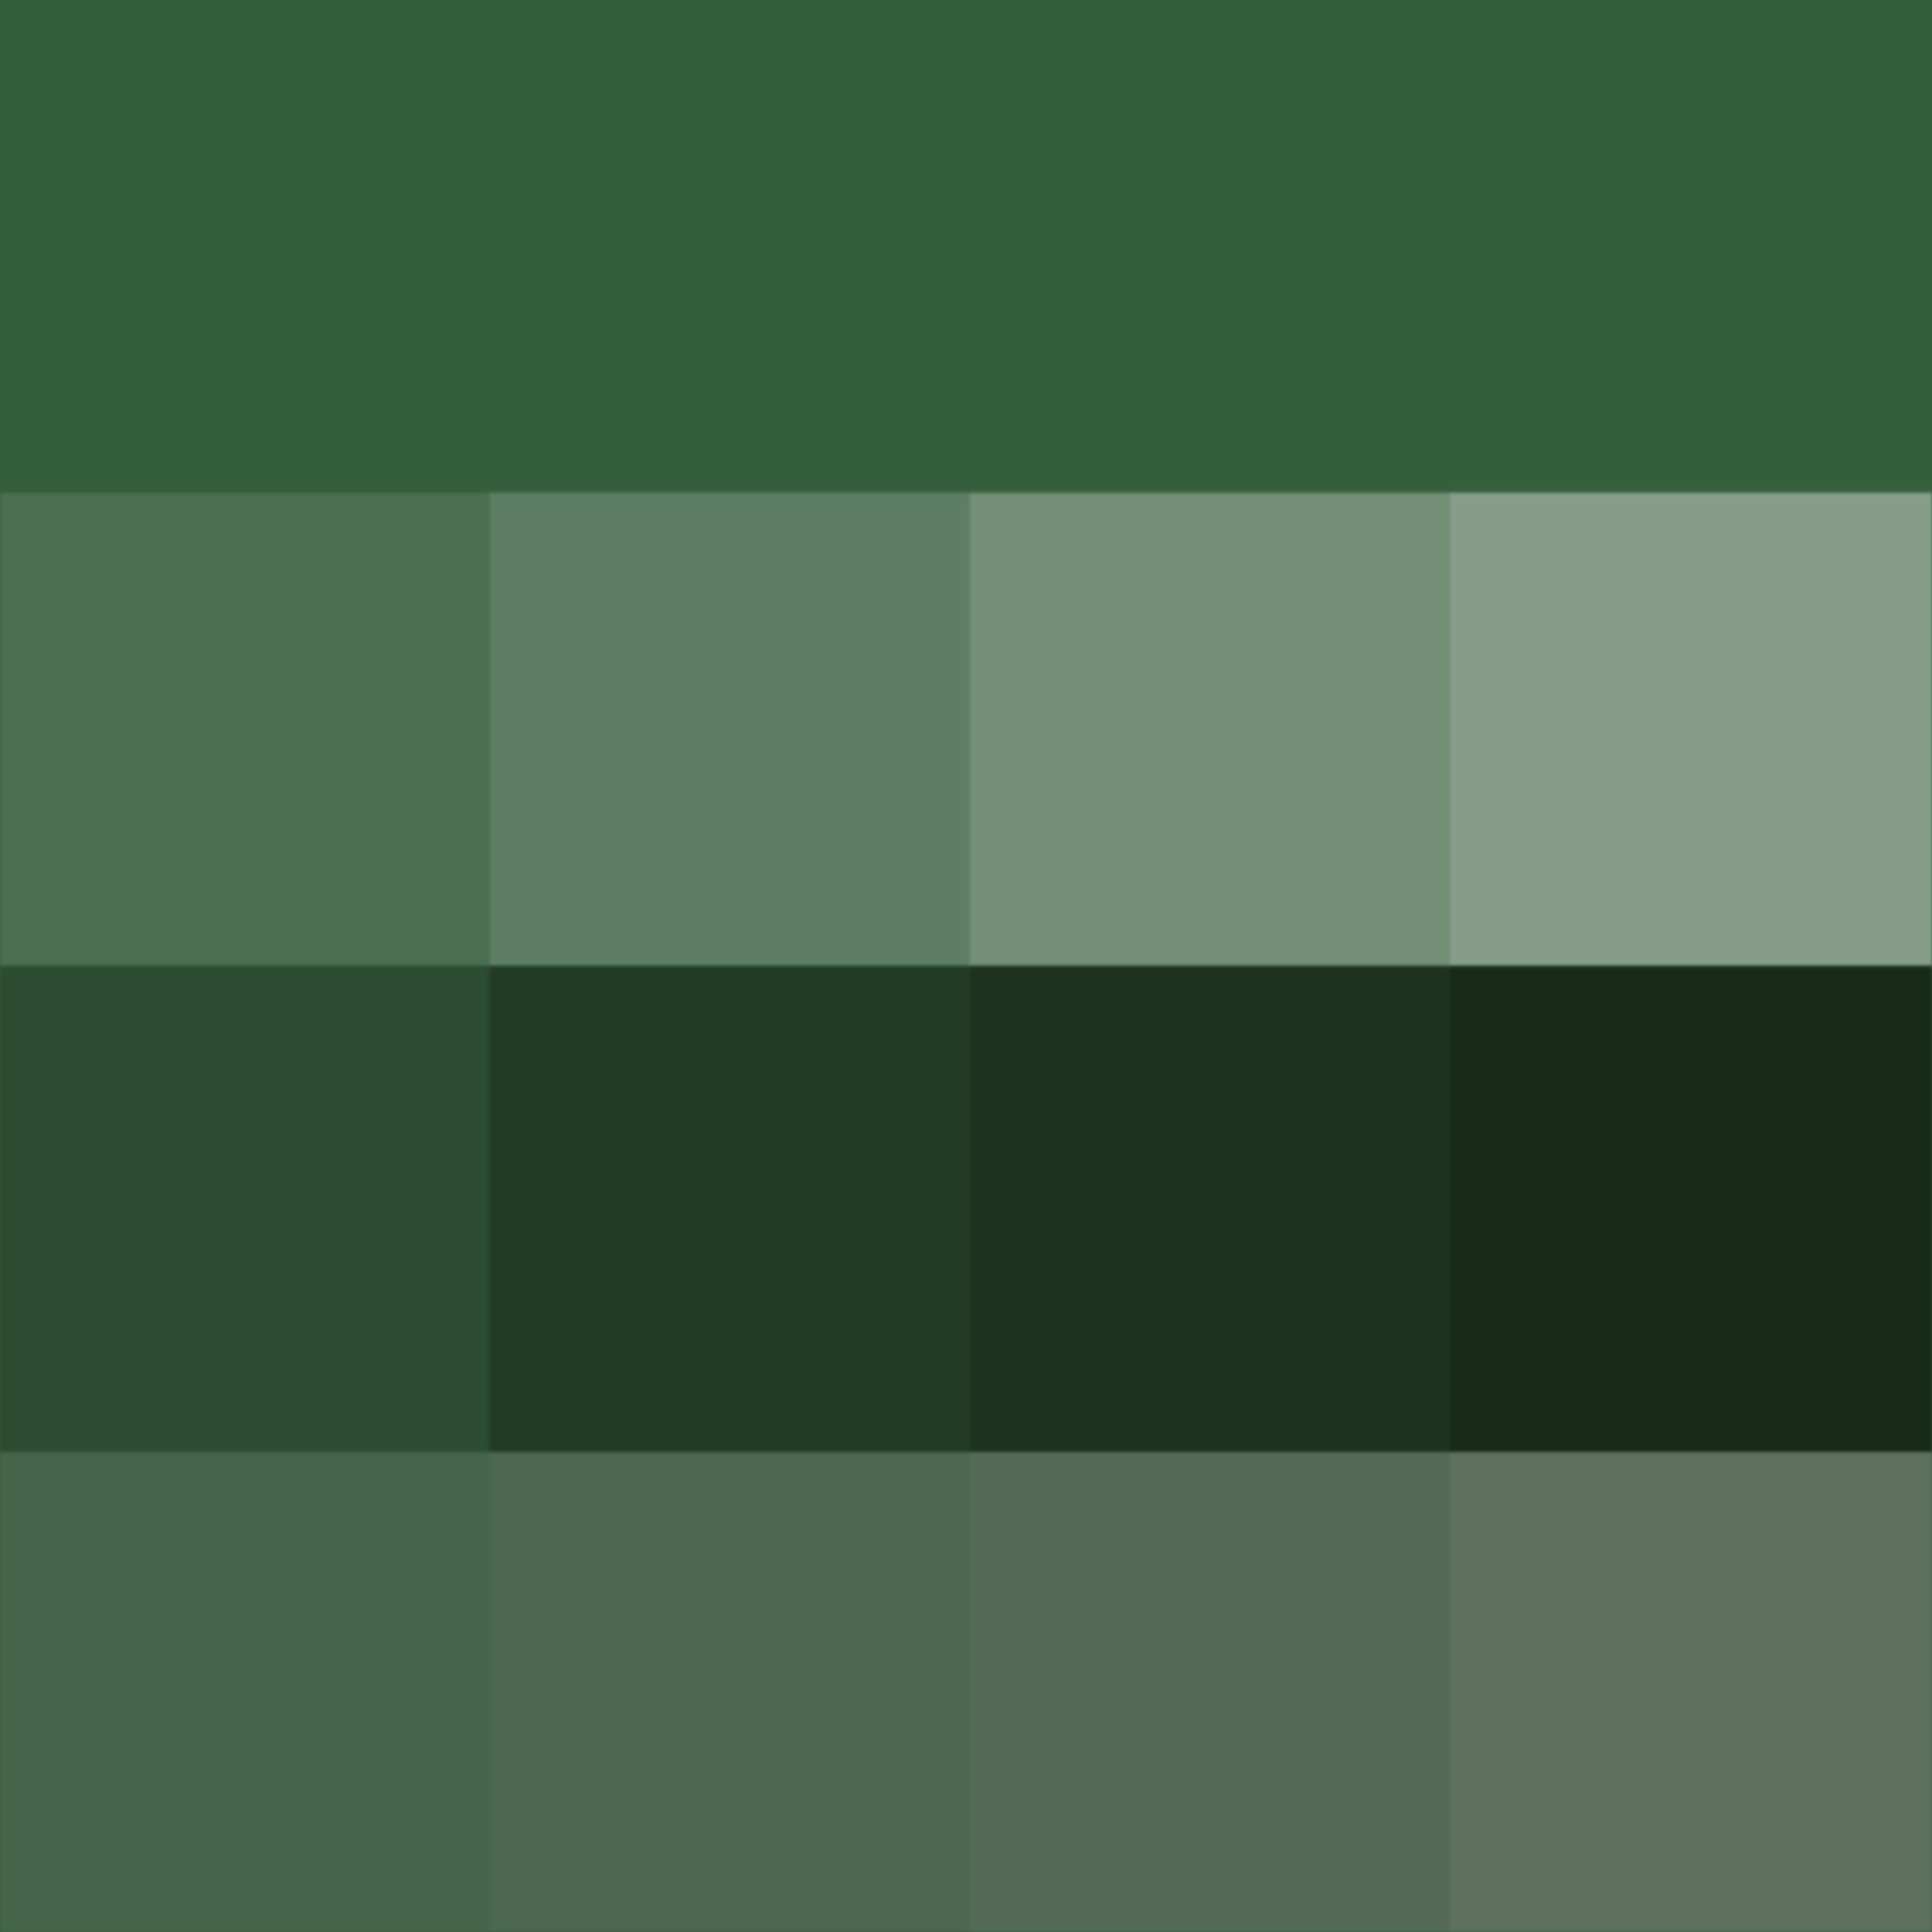 Слабо зеленый цвет. Цвет Хантер Грин. Хаки пантон. Хаки болотный оливковый пантон. Hunter Green палитра.